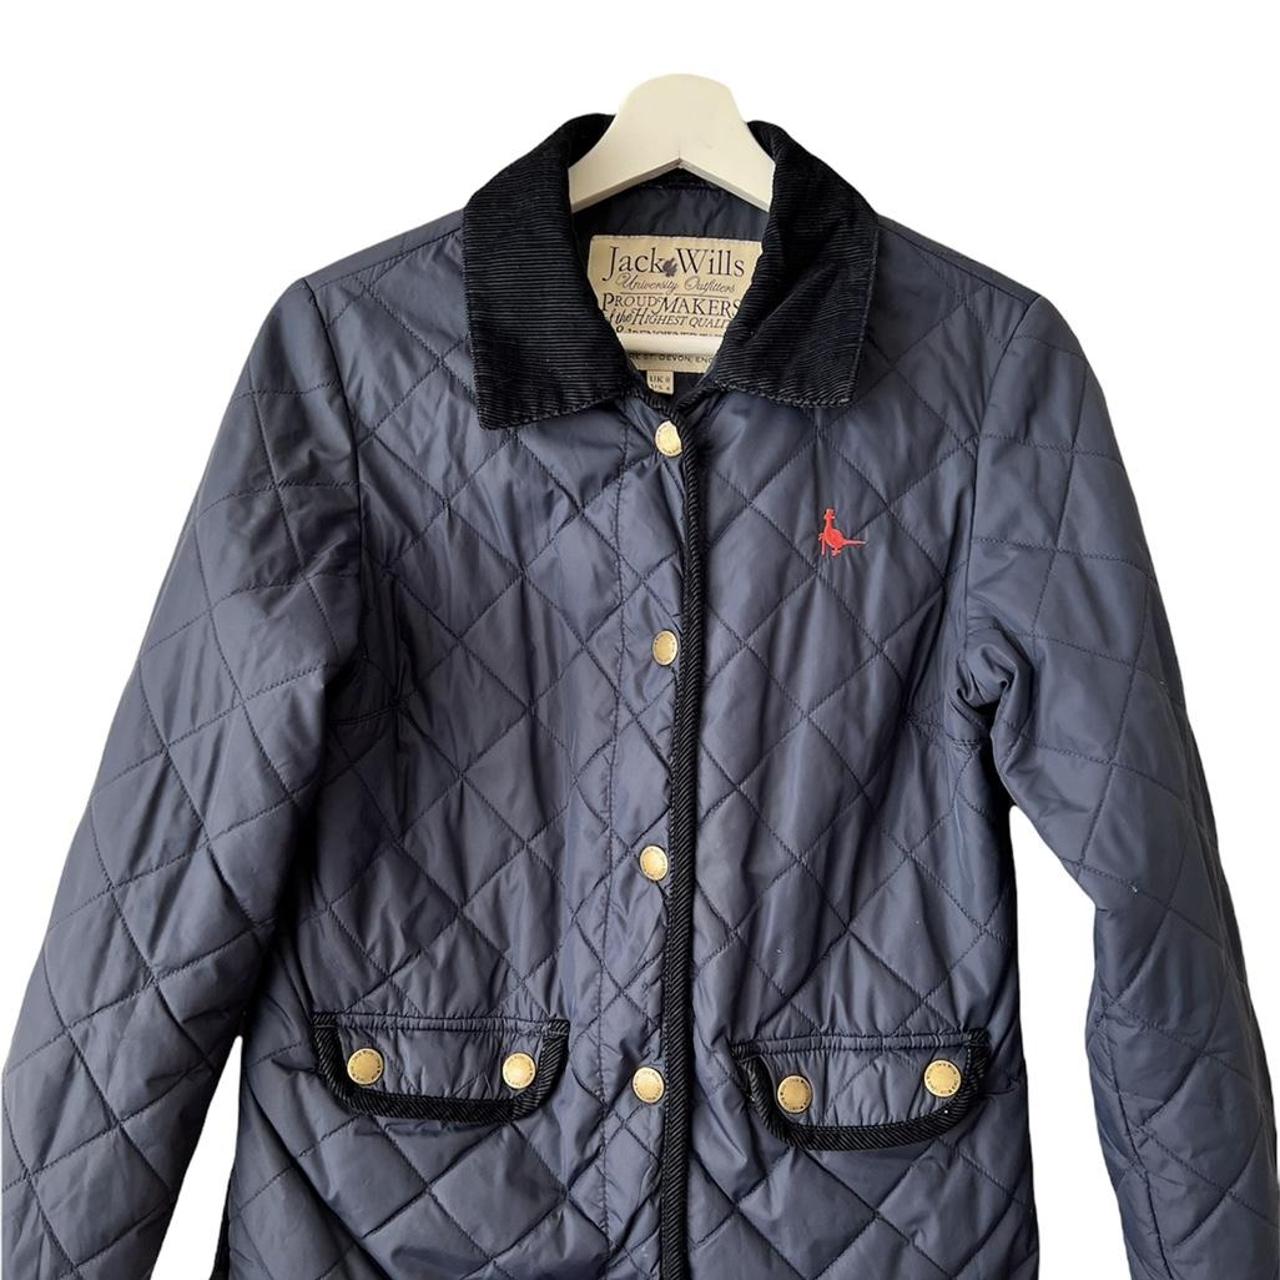 Jack Wills Navy Quilted Jacket Coat UK Size 8 - Very... - Depop